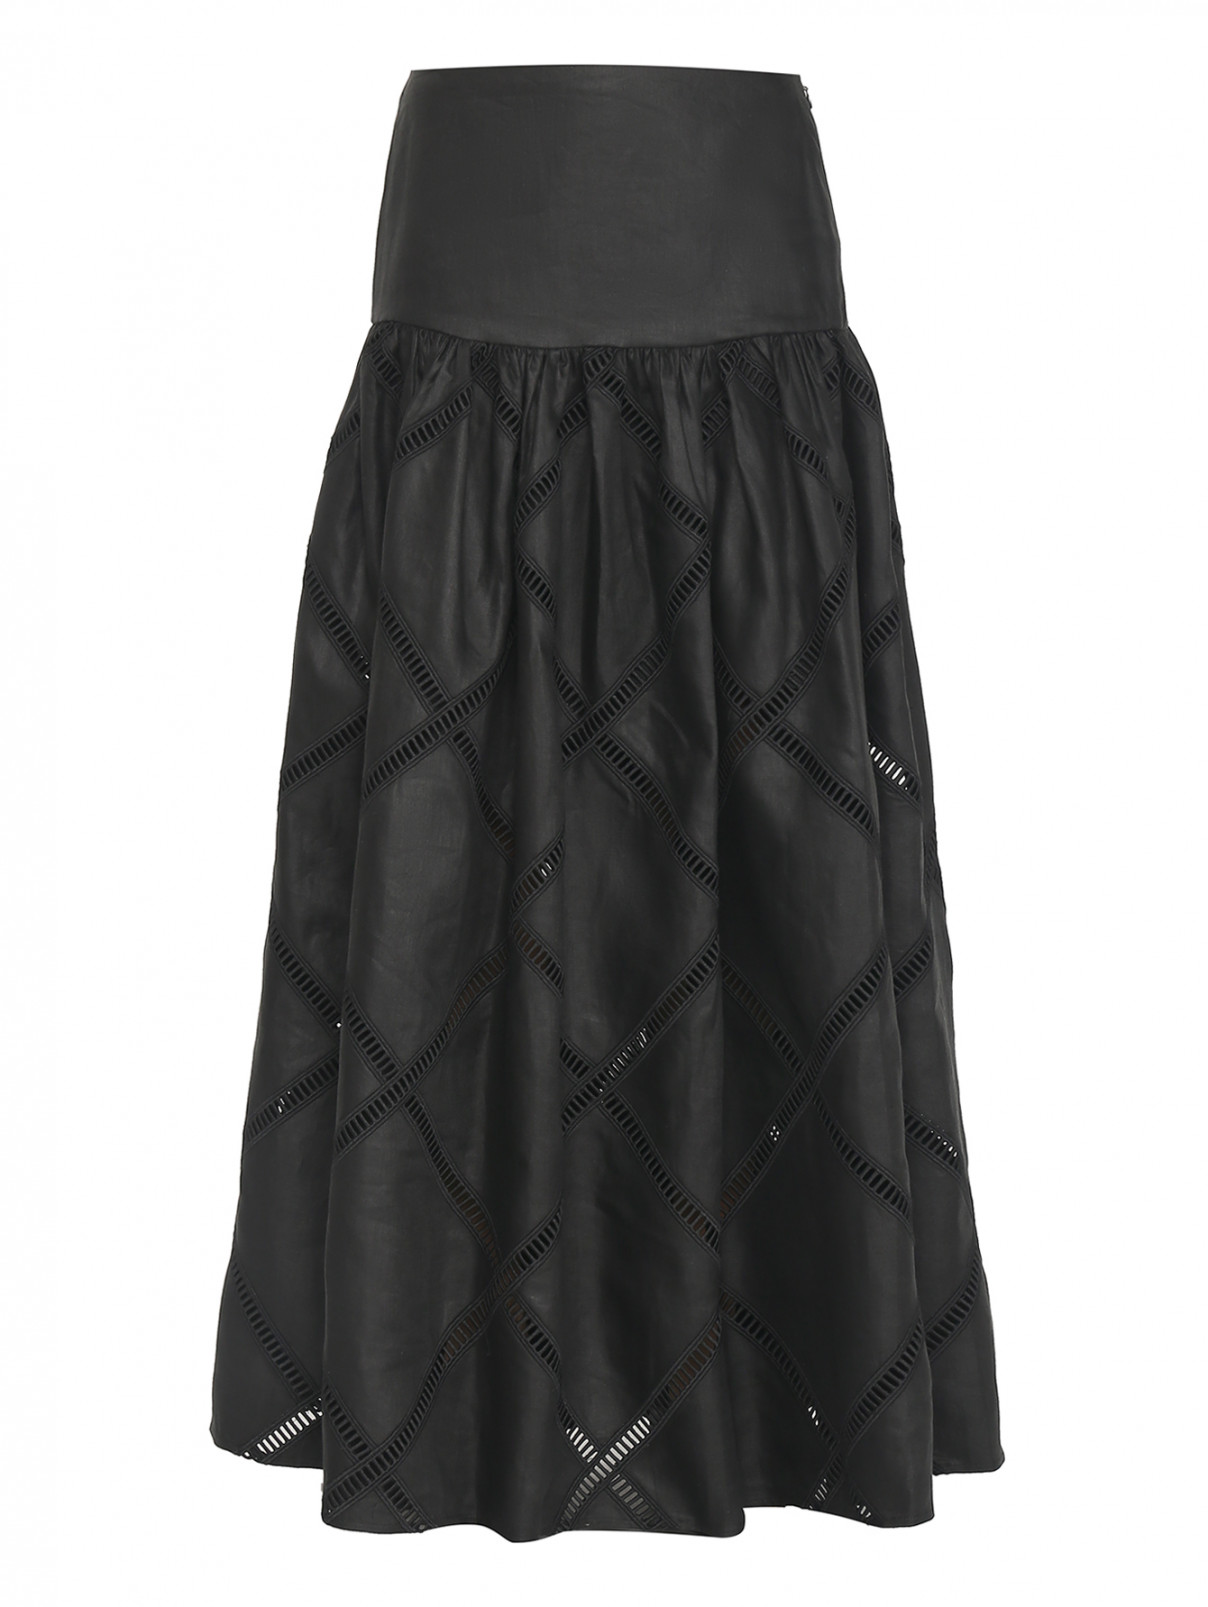 Юбка из льна с вышивкой Luisa Spagnoli  –  Общий вид  – Цвет:  Черный